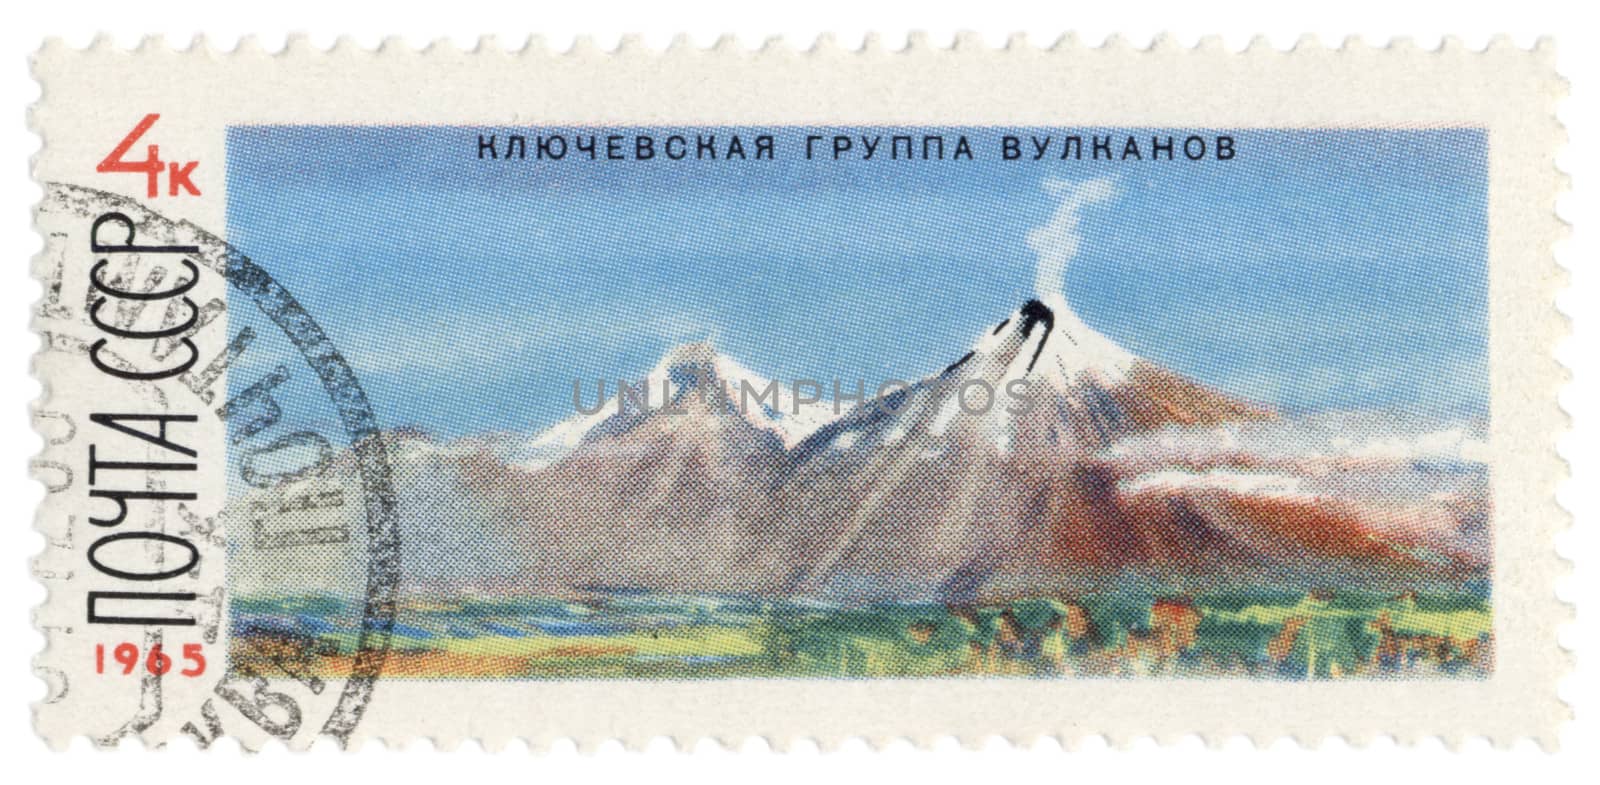 Klyuchevskoy volcano in Kamchatka on post stamp by wander